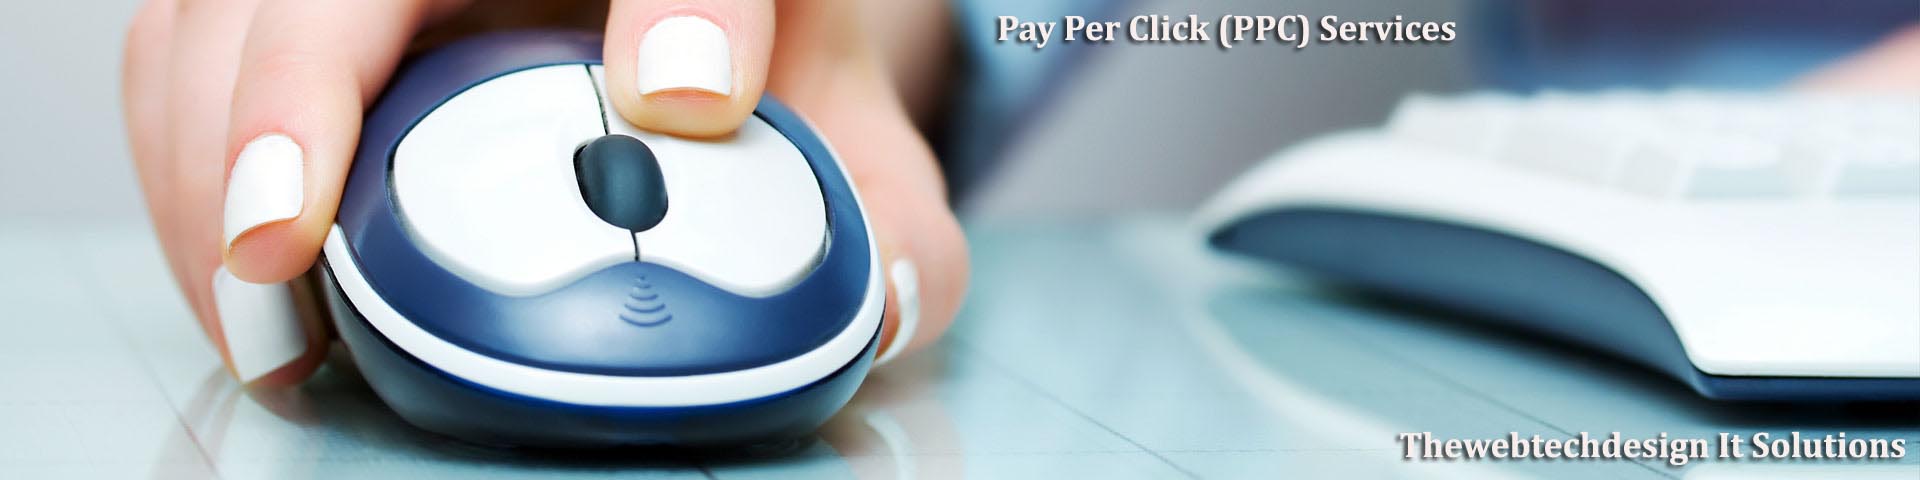 pay per click ppc services in delhi india